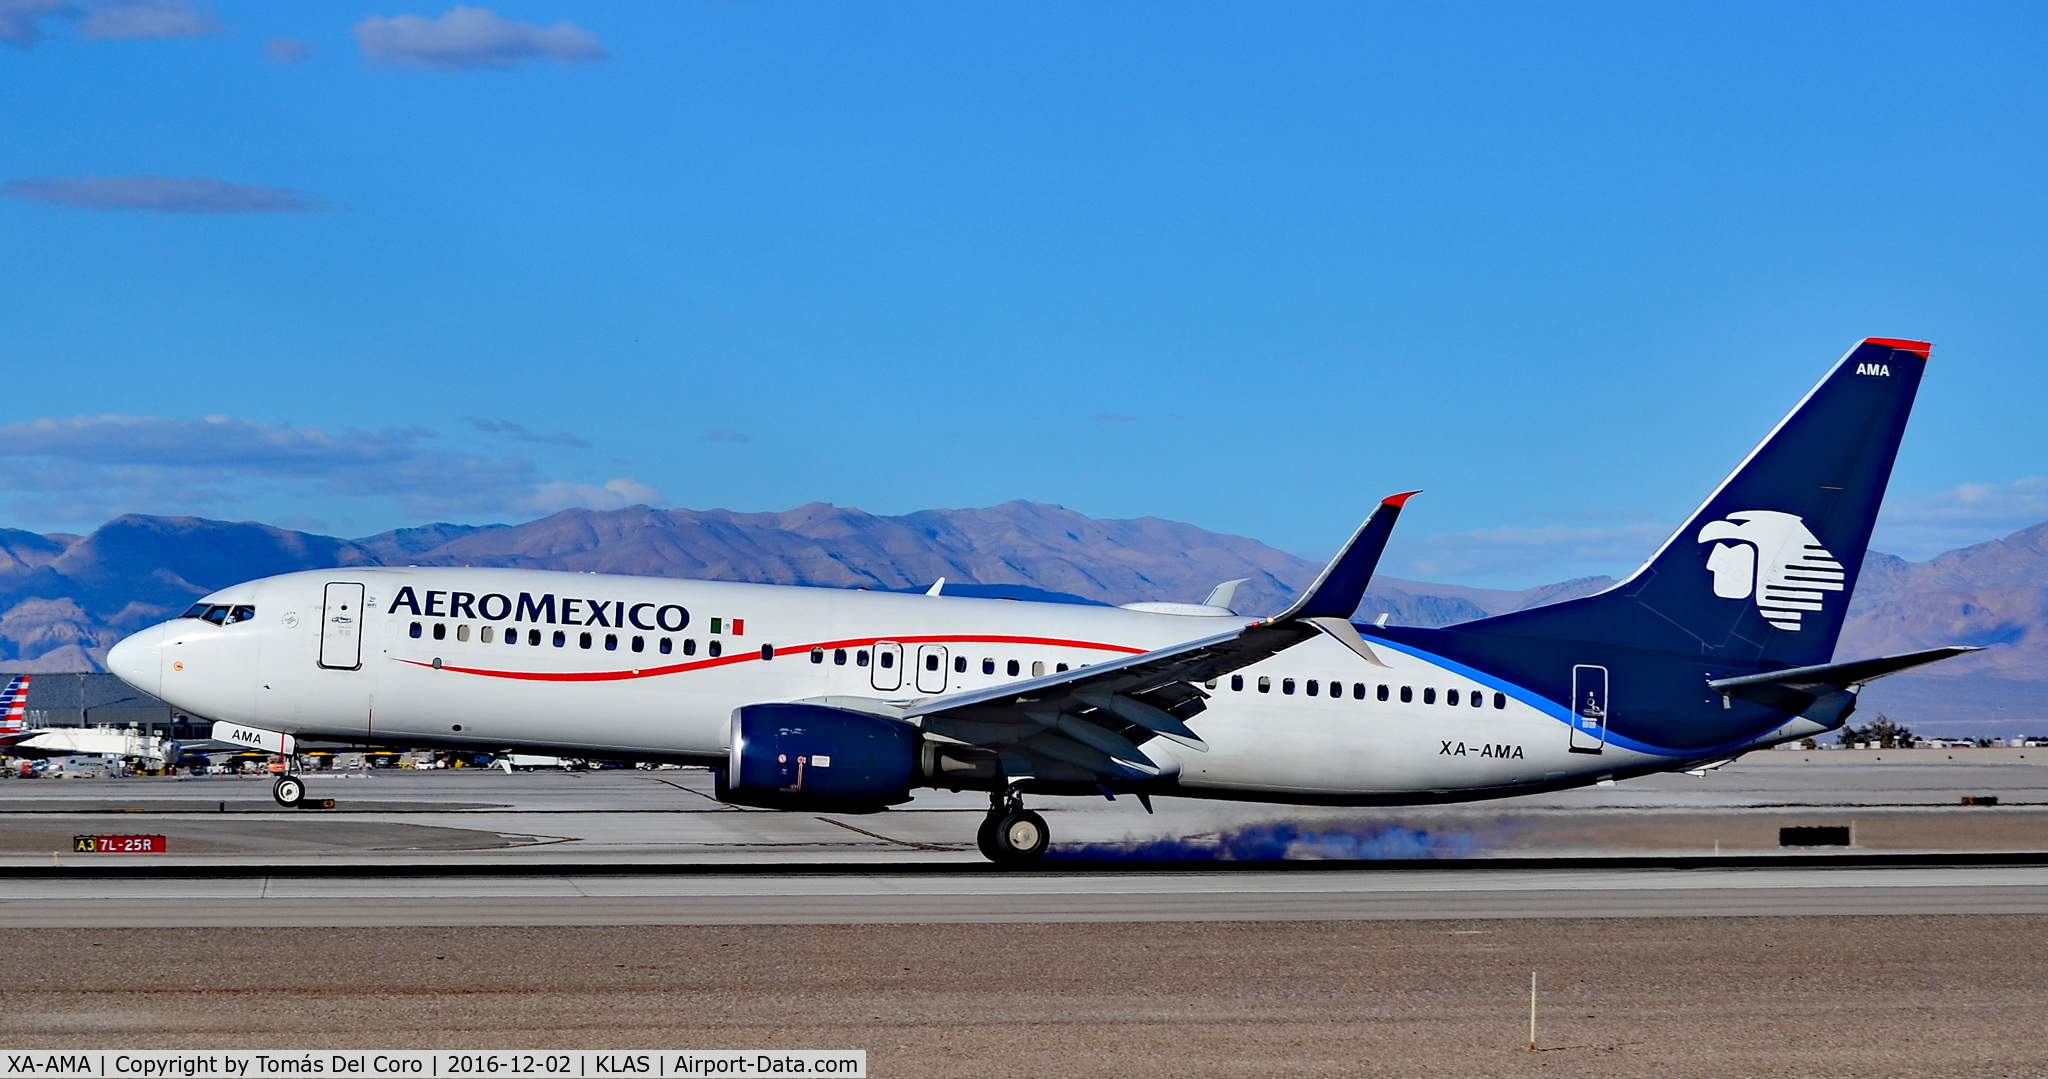 XA-AMA, 2012 Boeing 737-852 C/N 36700, XA-AMA AeroMexico 2012 Boeing 737-852 (C/N 36700/4137) - Las Vegas - McCarran International Airport (LAS / KLAS)
USA - Nevada December 2, 2016
Photo: Tomás Del Coro